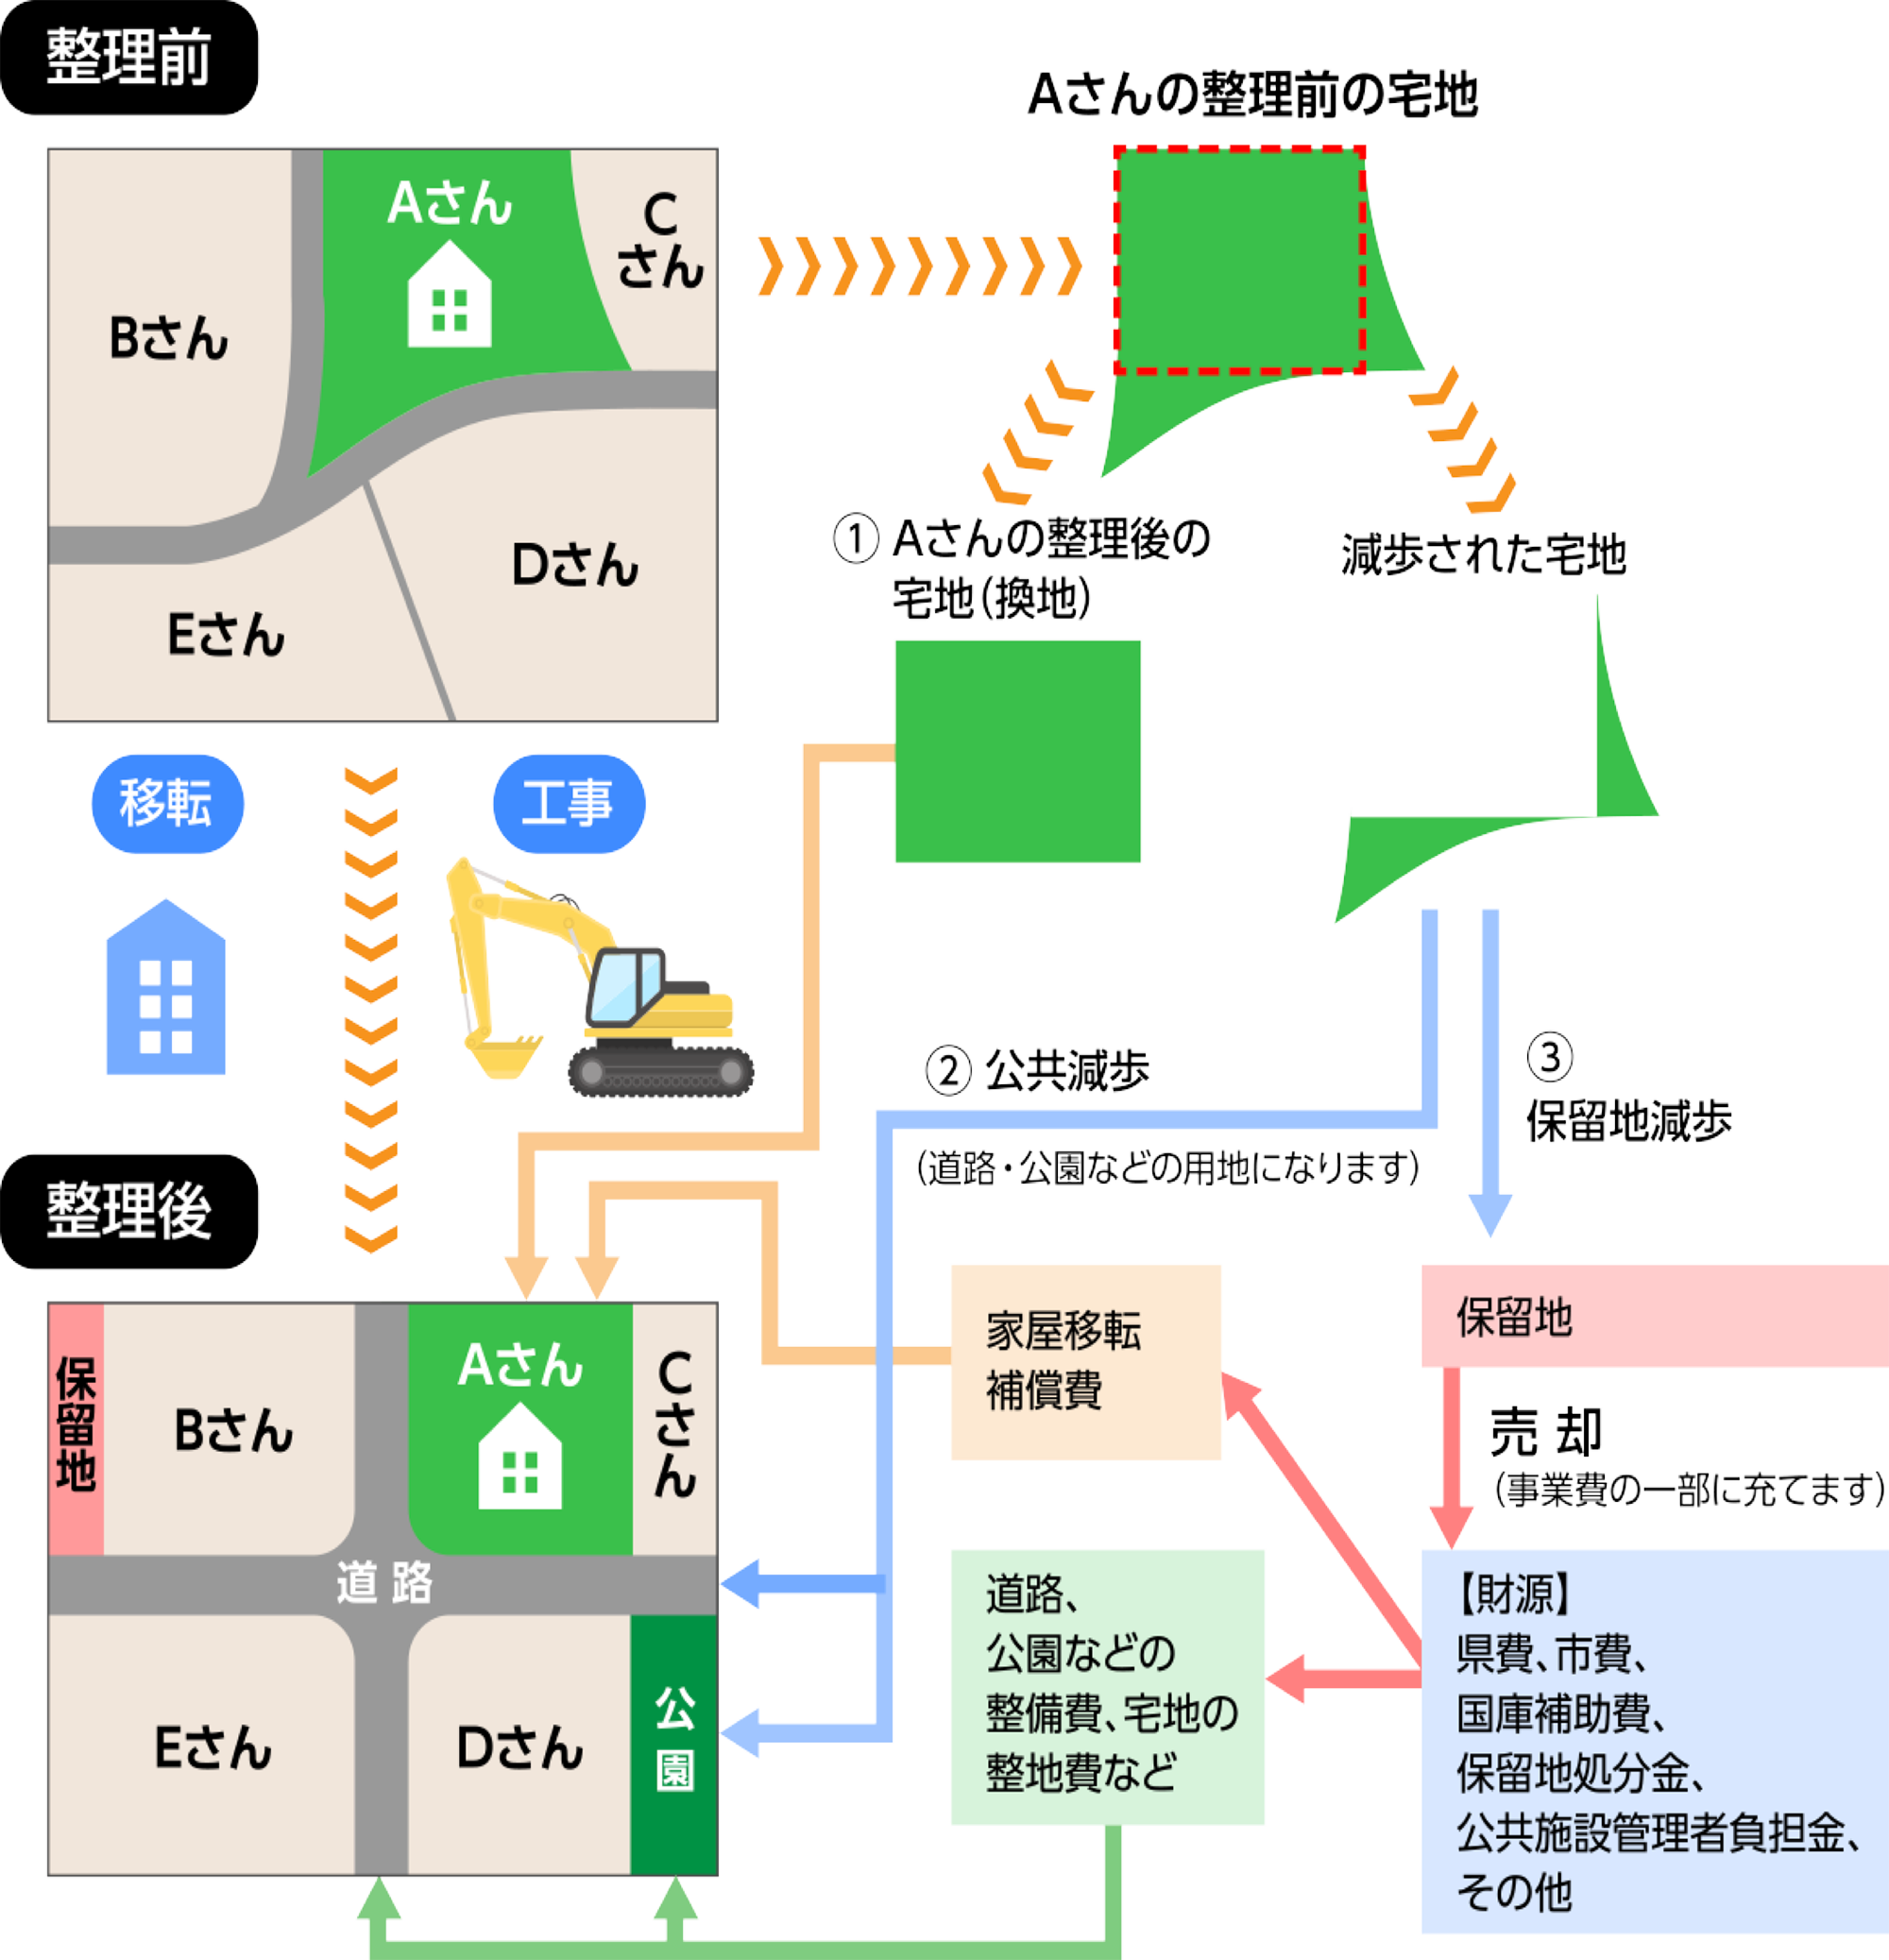 区画整理事業の概要 | 公益財団法人 愛知県都市整備協会